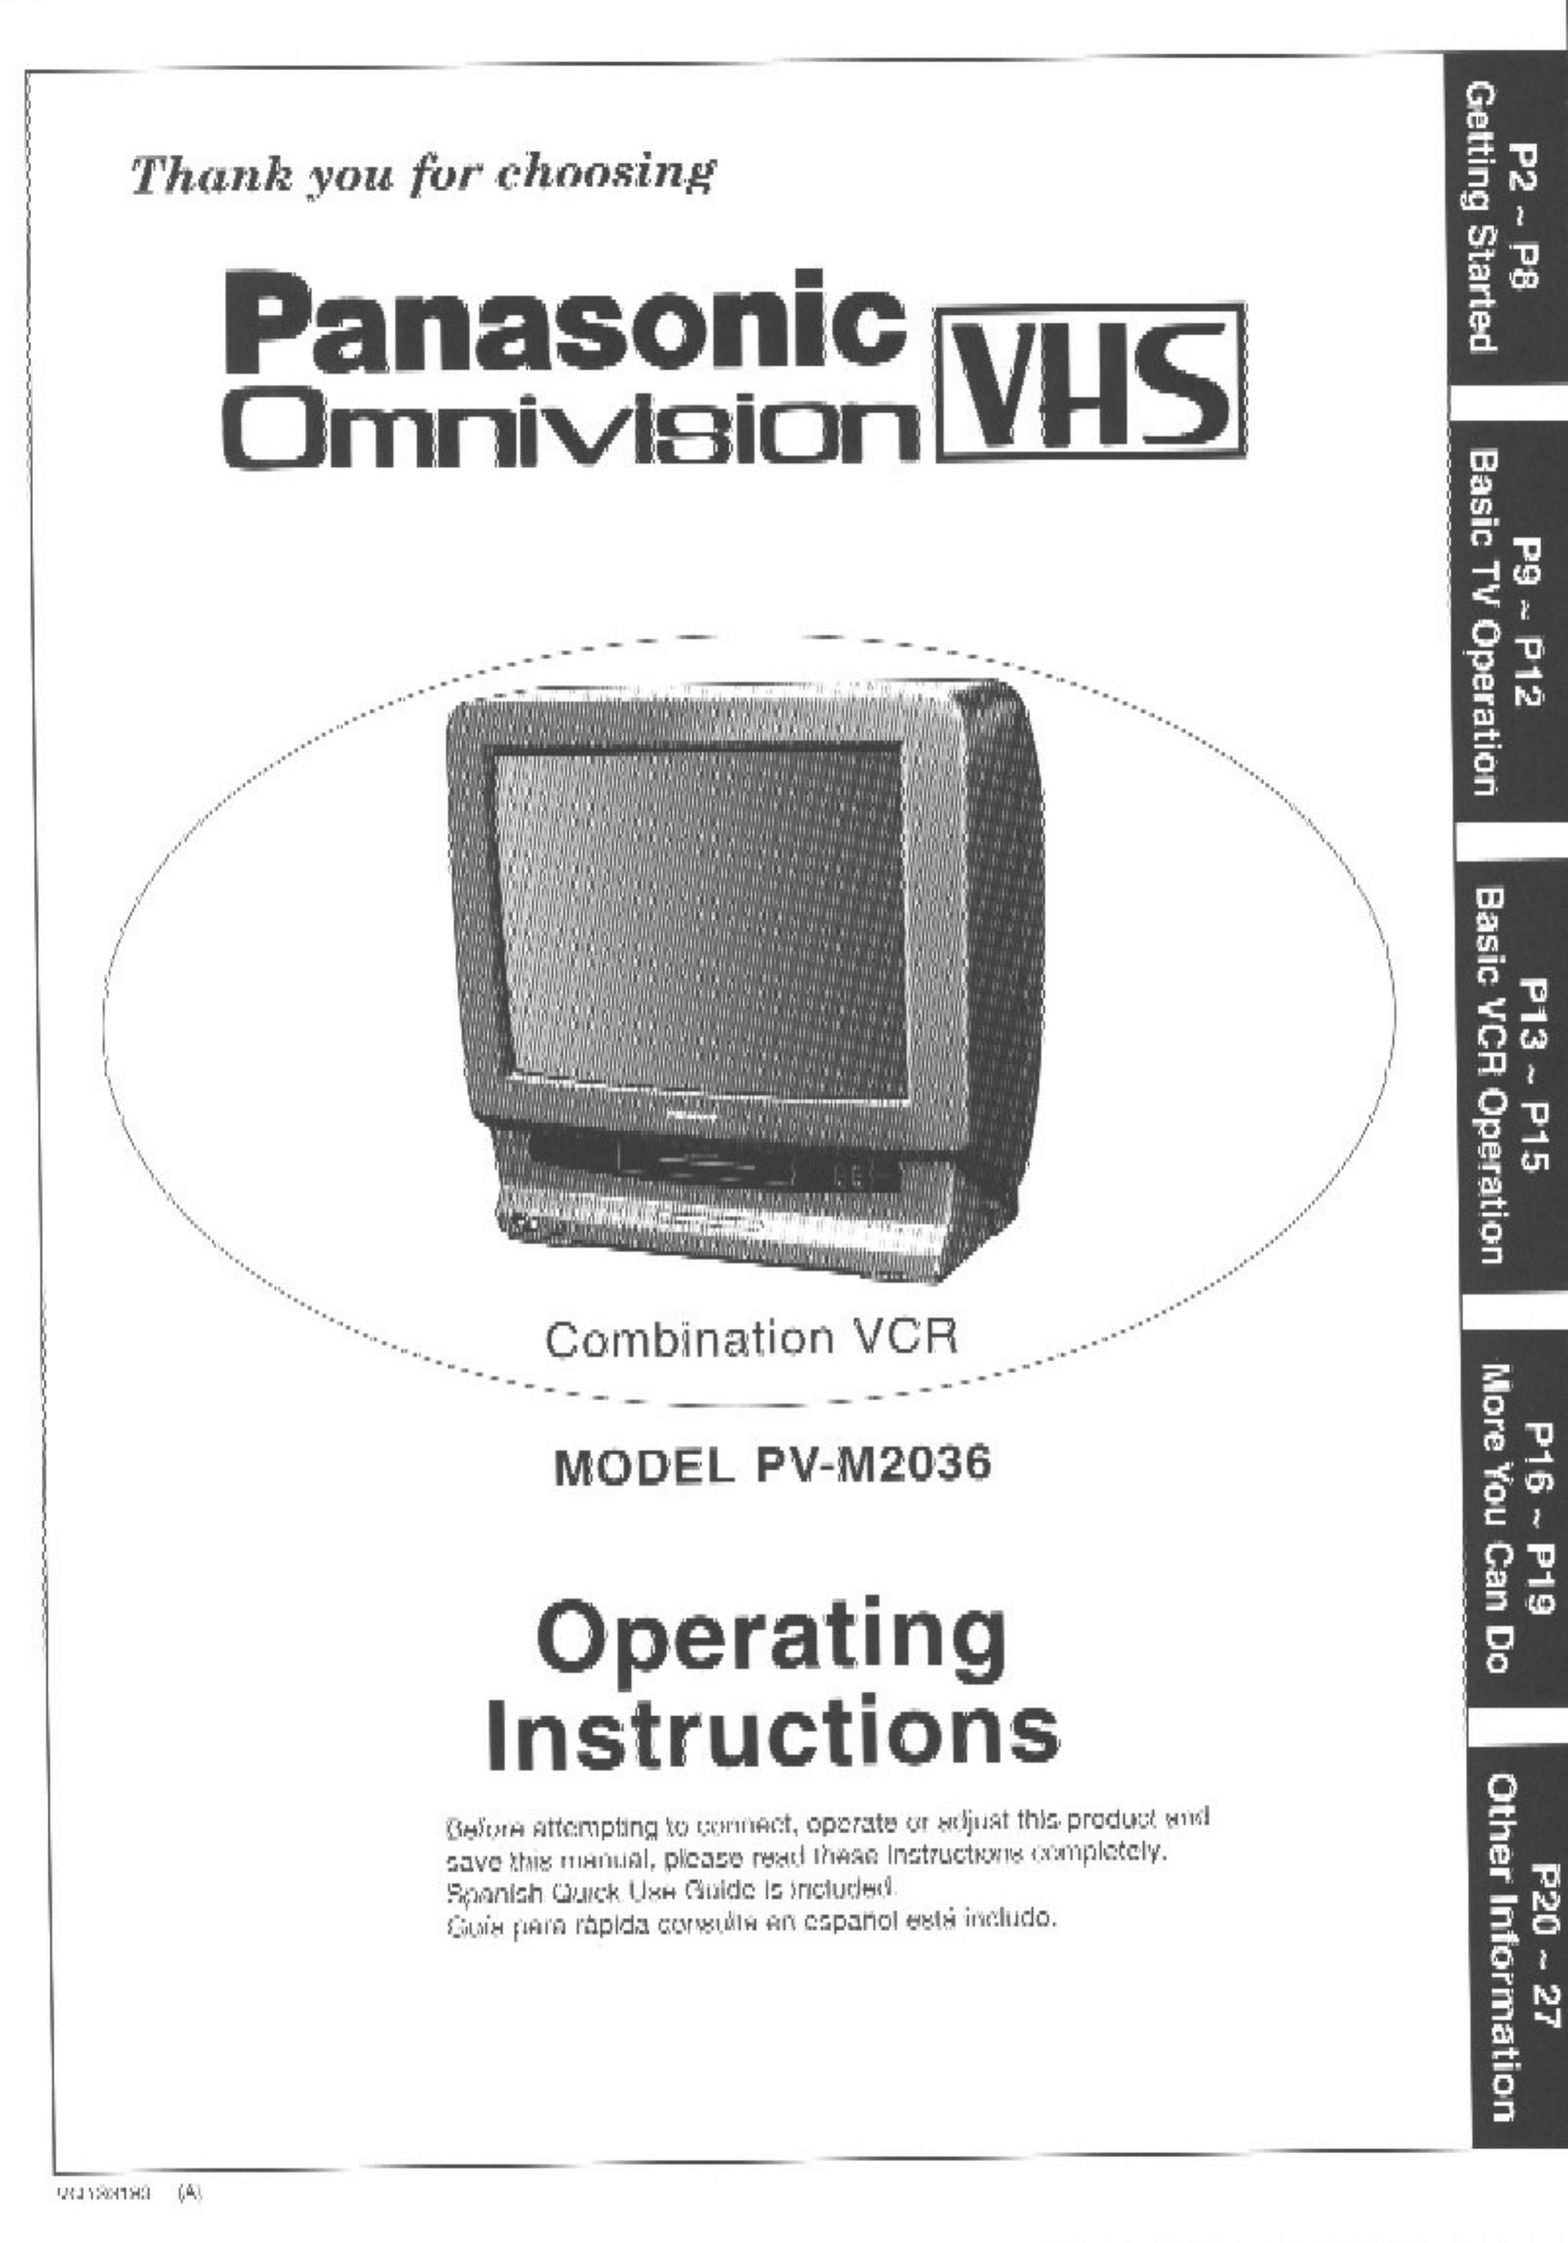 Panasonic PV-M2036 TV VCR Combo User Manual